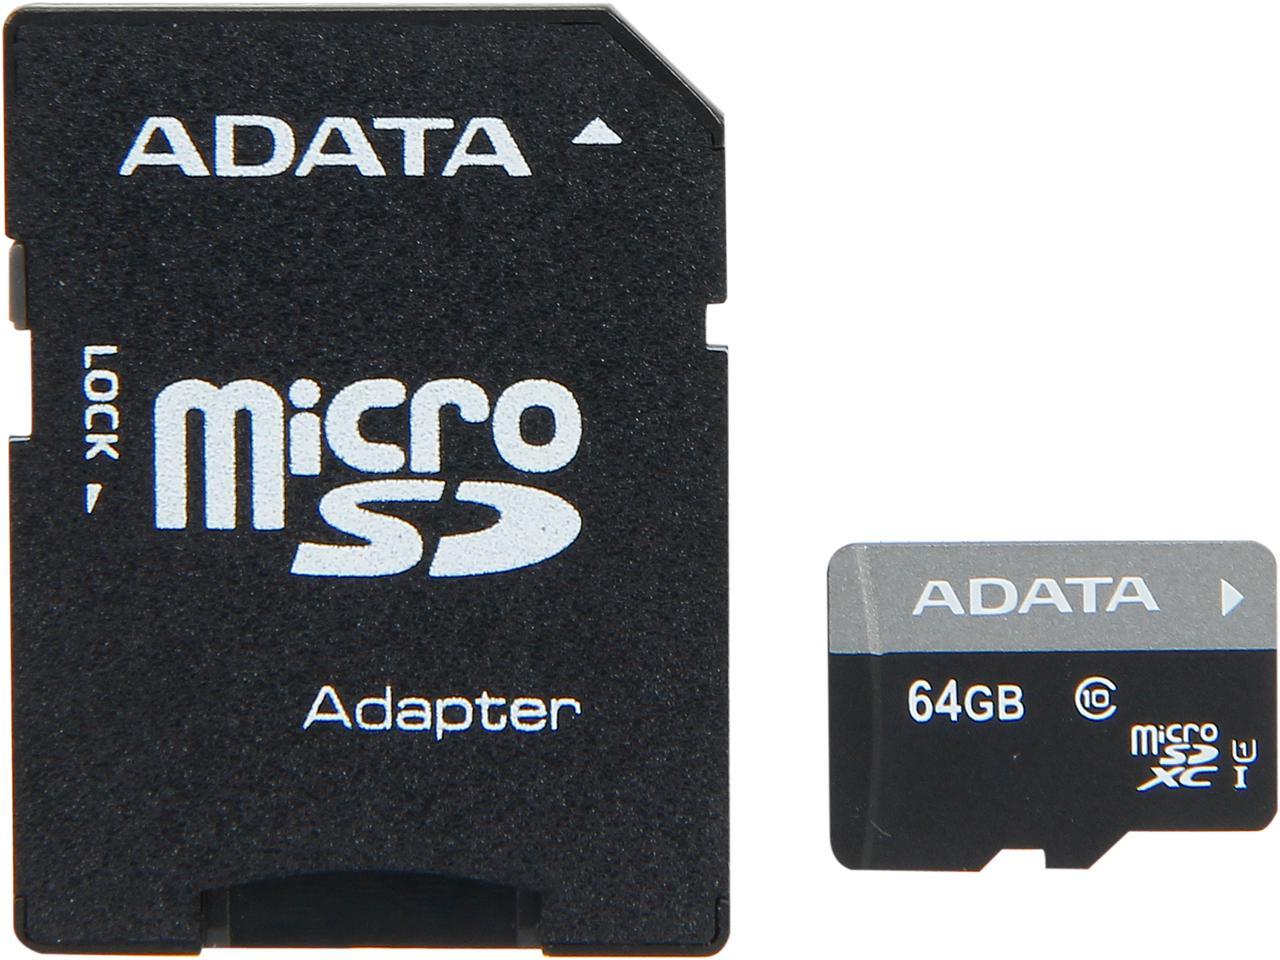 ADATA 64GB AUSDX 6 CLASSE 10 Scheda di Memoria UHS microSDHC - AUSDX 64 I GUICL 10A1-RA1 